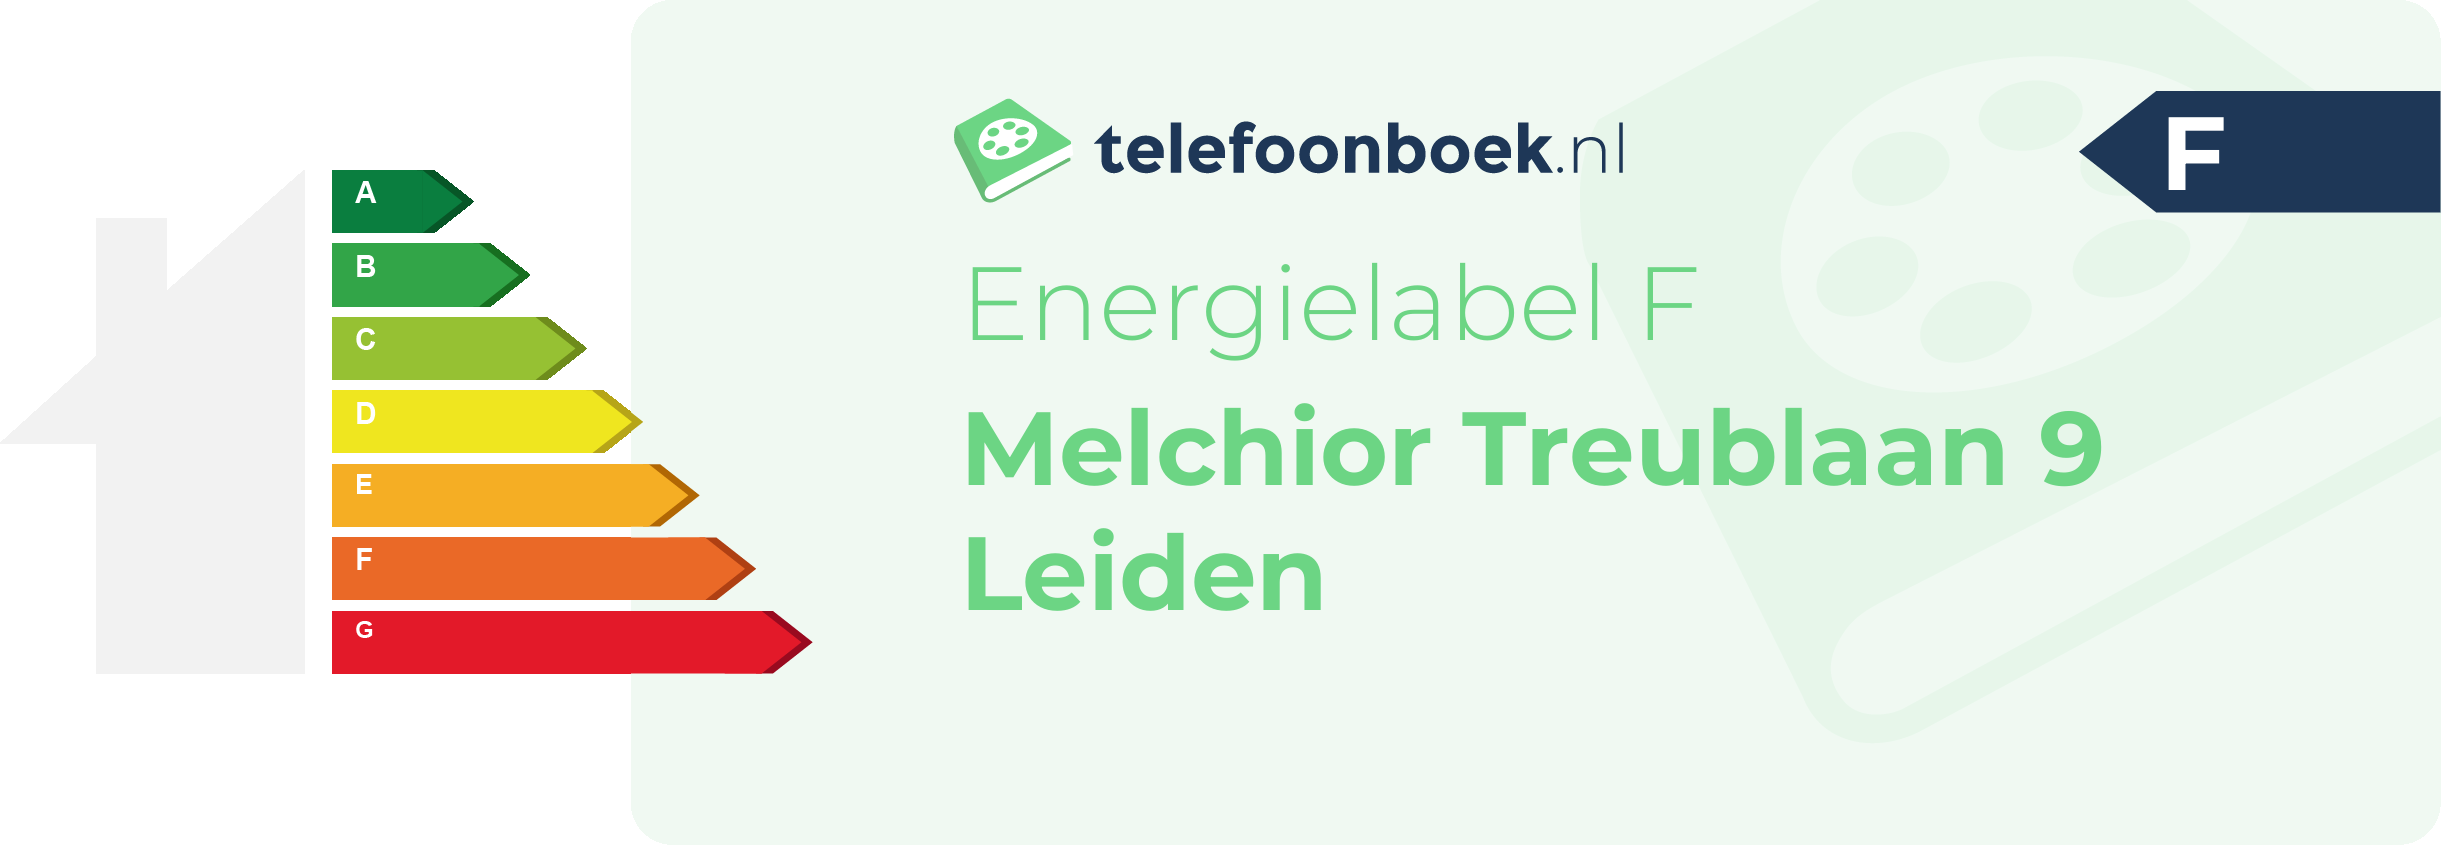 Energielabel Melchior Treublaan 9 Leiden